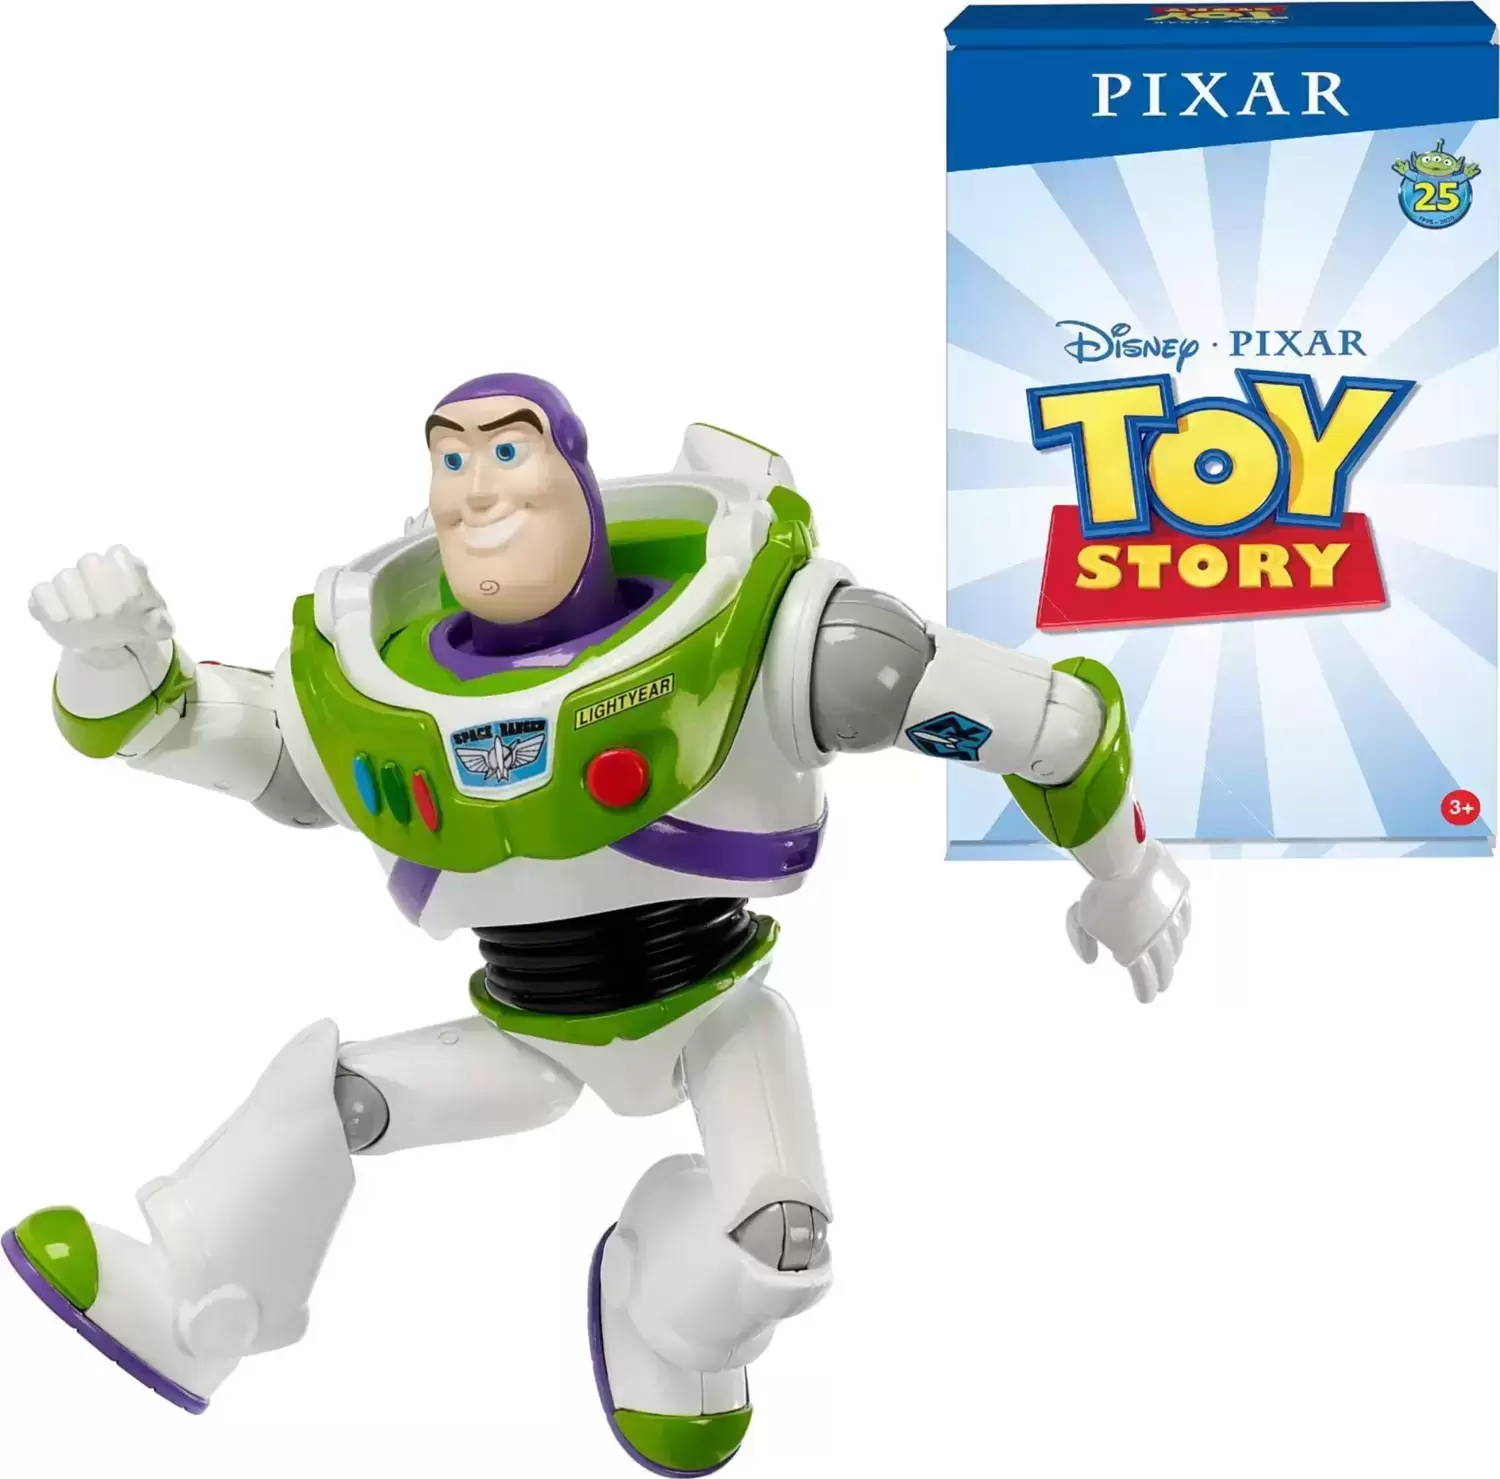 Pixar - Buzz Lightyear - 25th Anniversary (1995-2020)